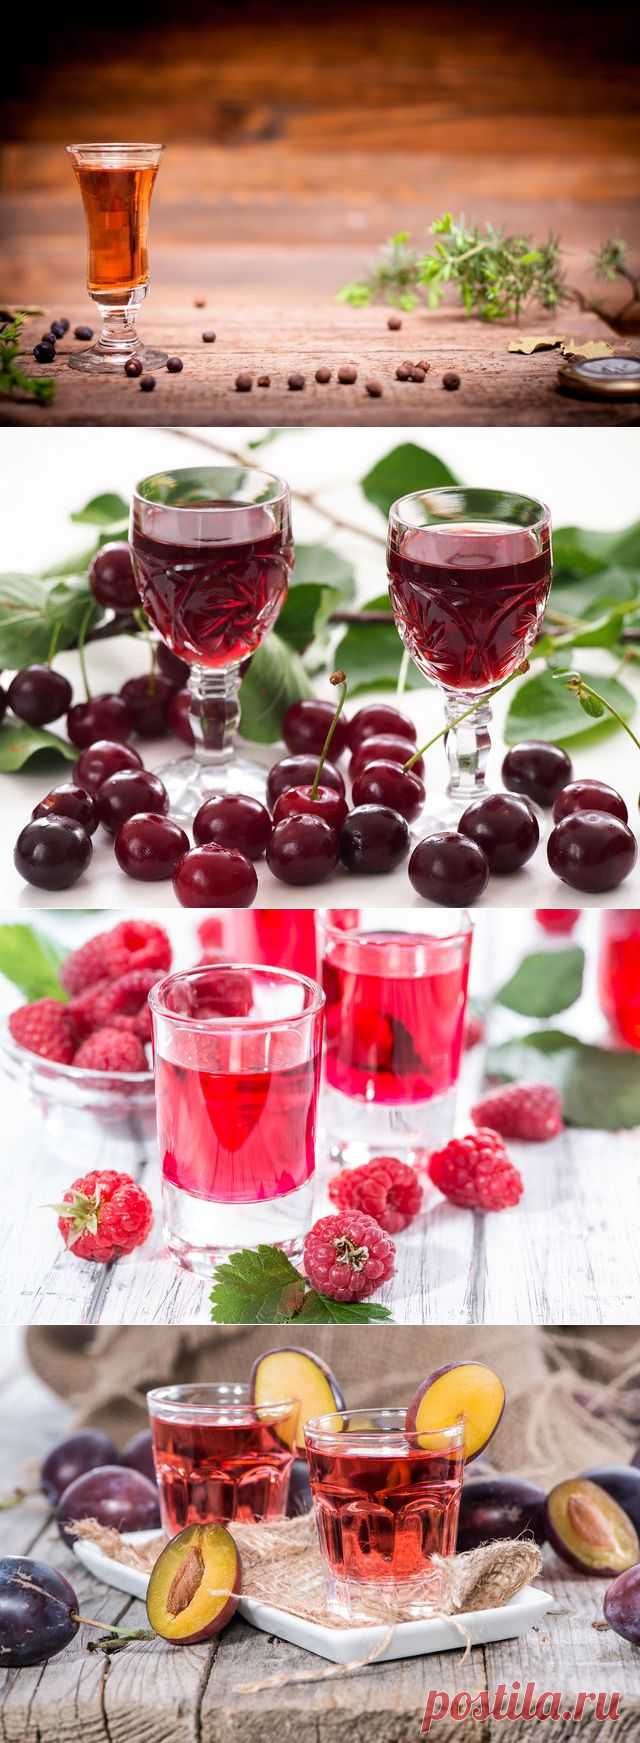 Хмельные радости. Рецепты домашних алкогольных напитков из фруктов и ягод